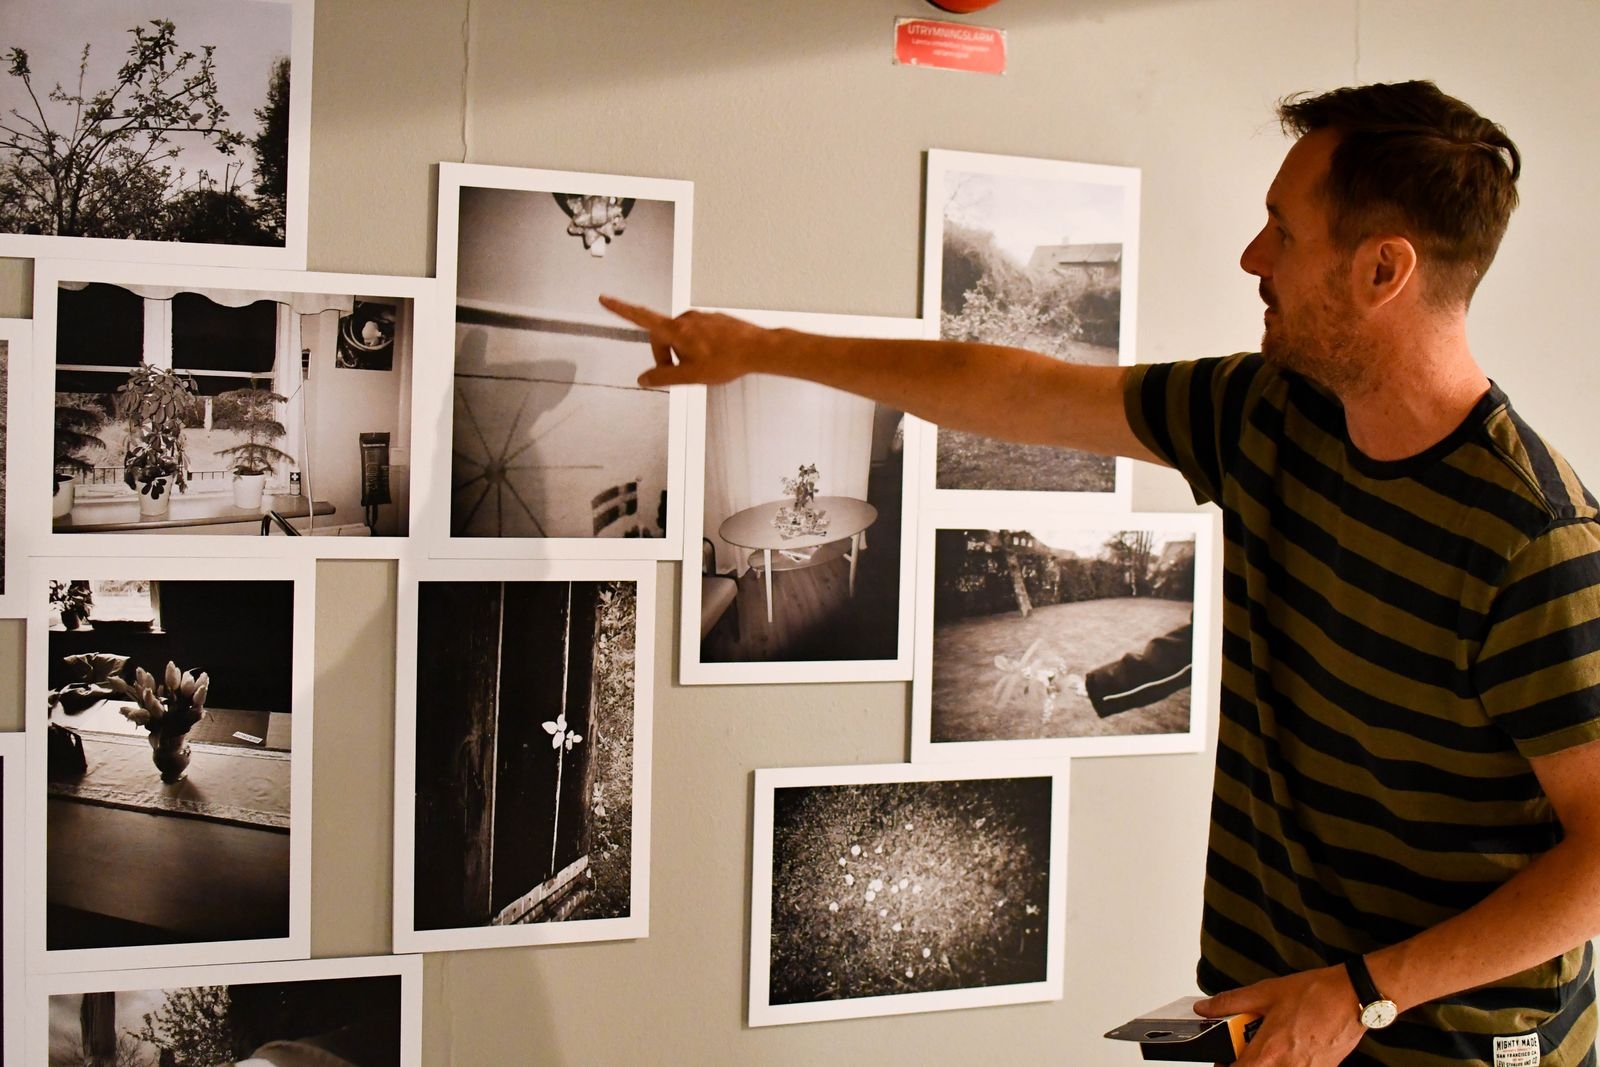 Deltagarna från Vännens verksamhet fick under konstnär Michael Whelans ledning fotografera med analoga engångskameror. Deras bilder visas tillsammans med Michaels verk.